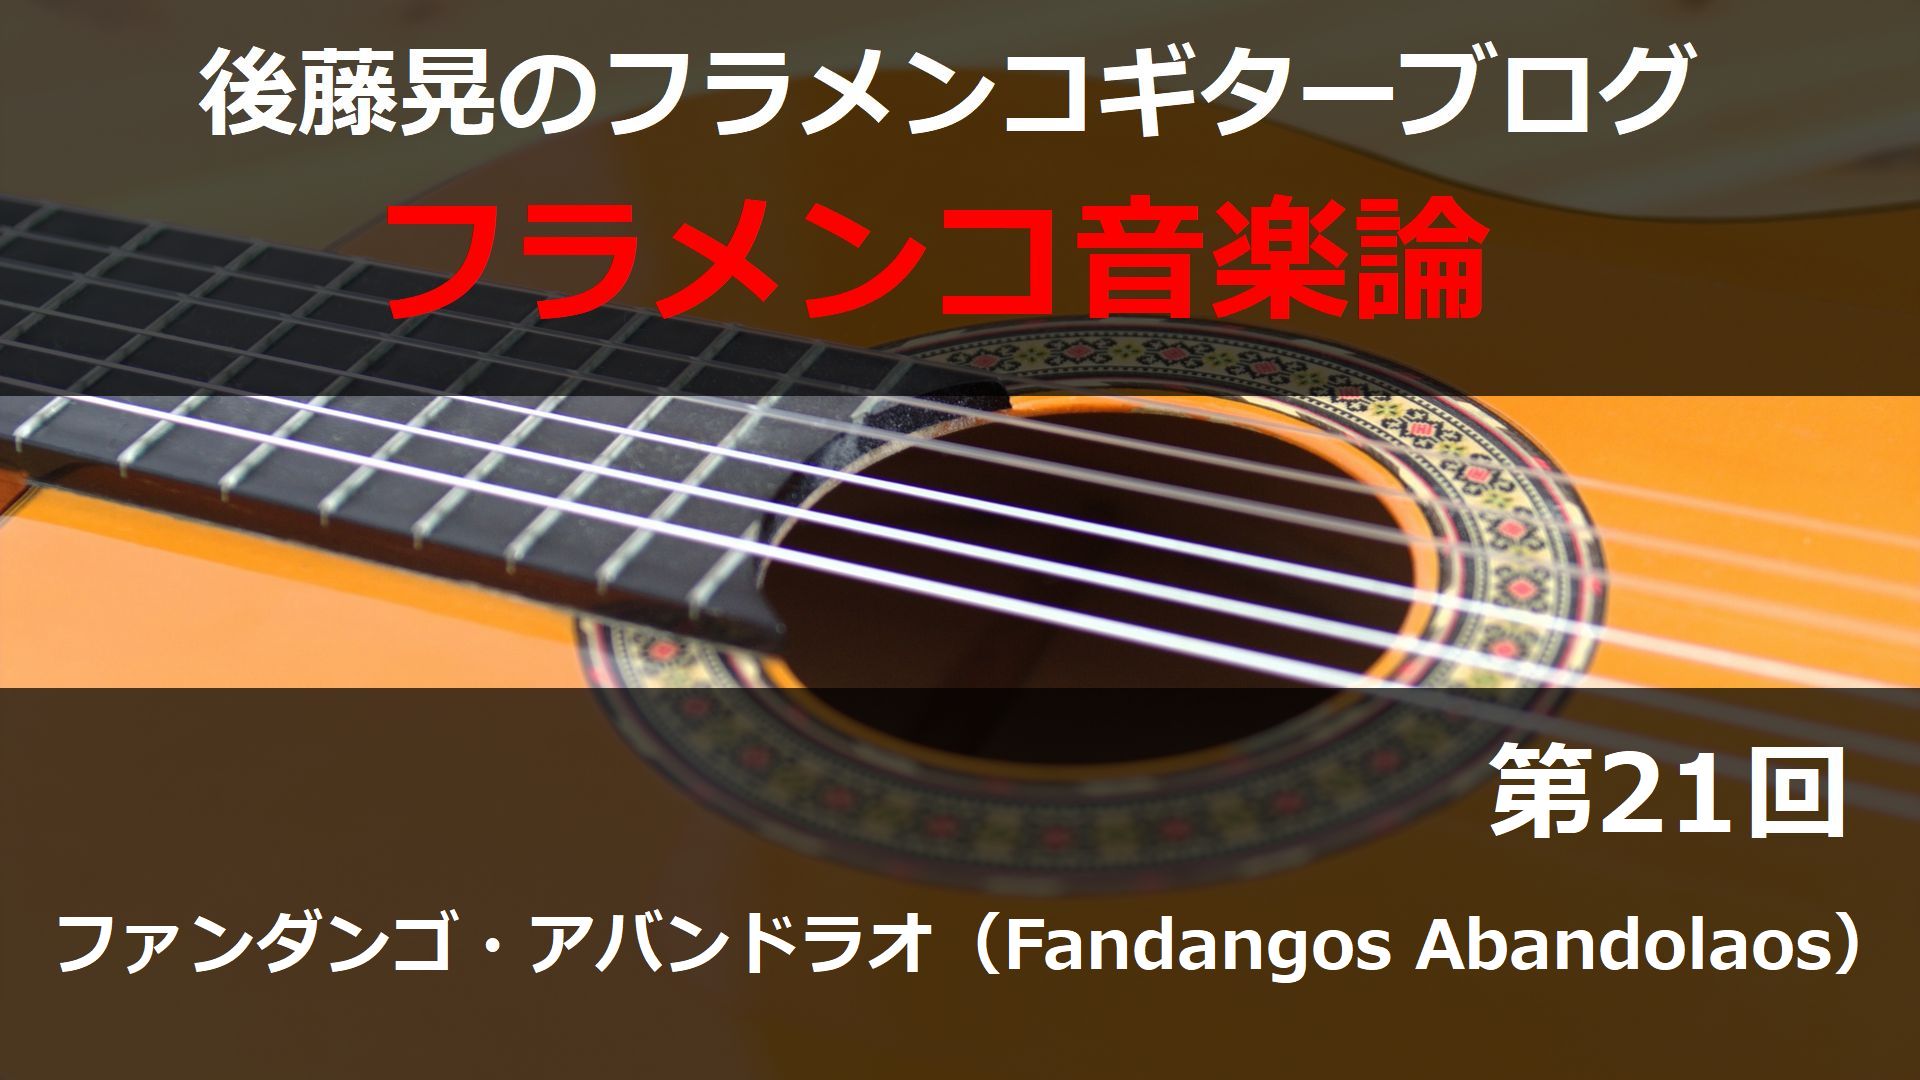 ファンダンゴ・アバンドラオ（Fandangos Abandolaos）【フラメンコ音楽論21】